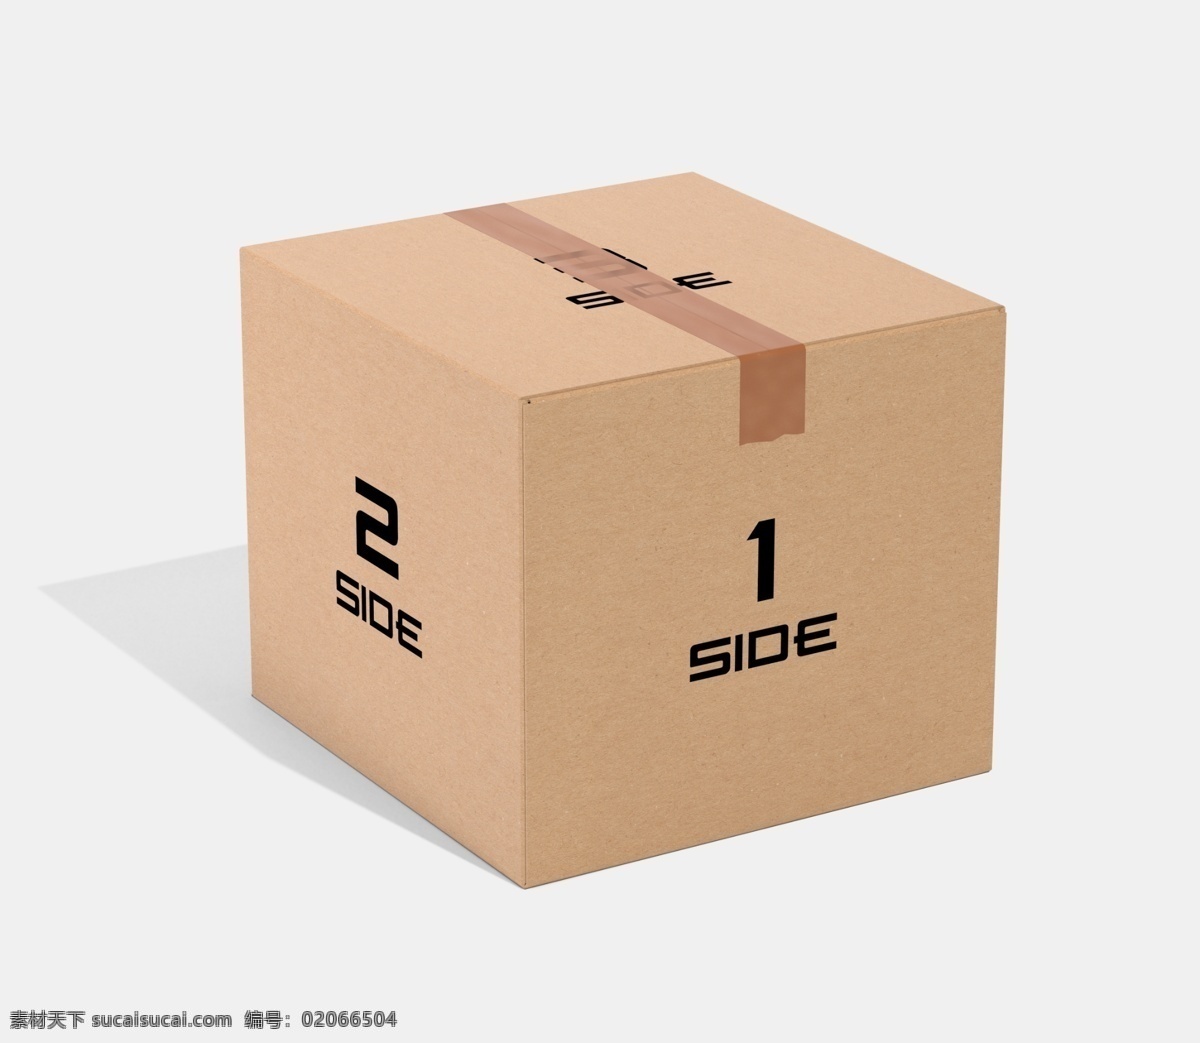 包装 盒子 展示 效果图 包装盒设计 盒子设计 礼盒设计 盒子效果图 盒子样机 展示效果图 包装盒子 立体效果图 包装设计